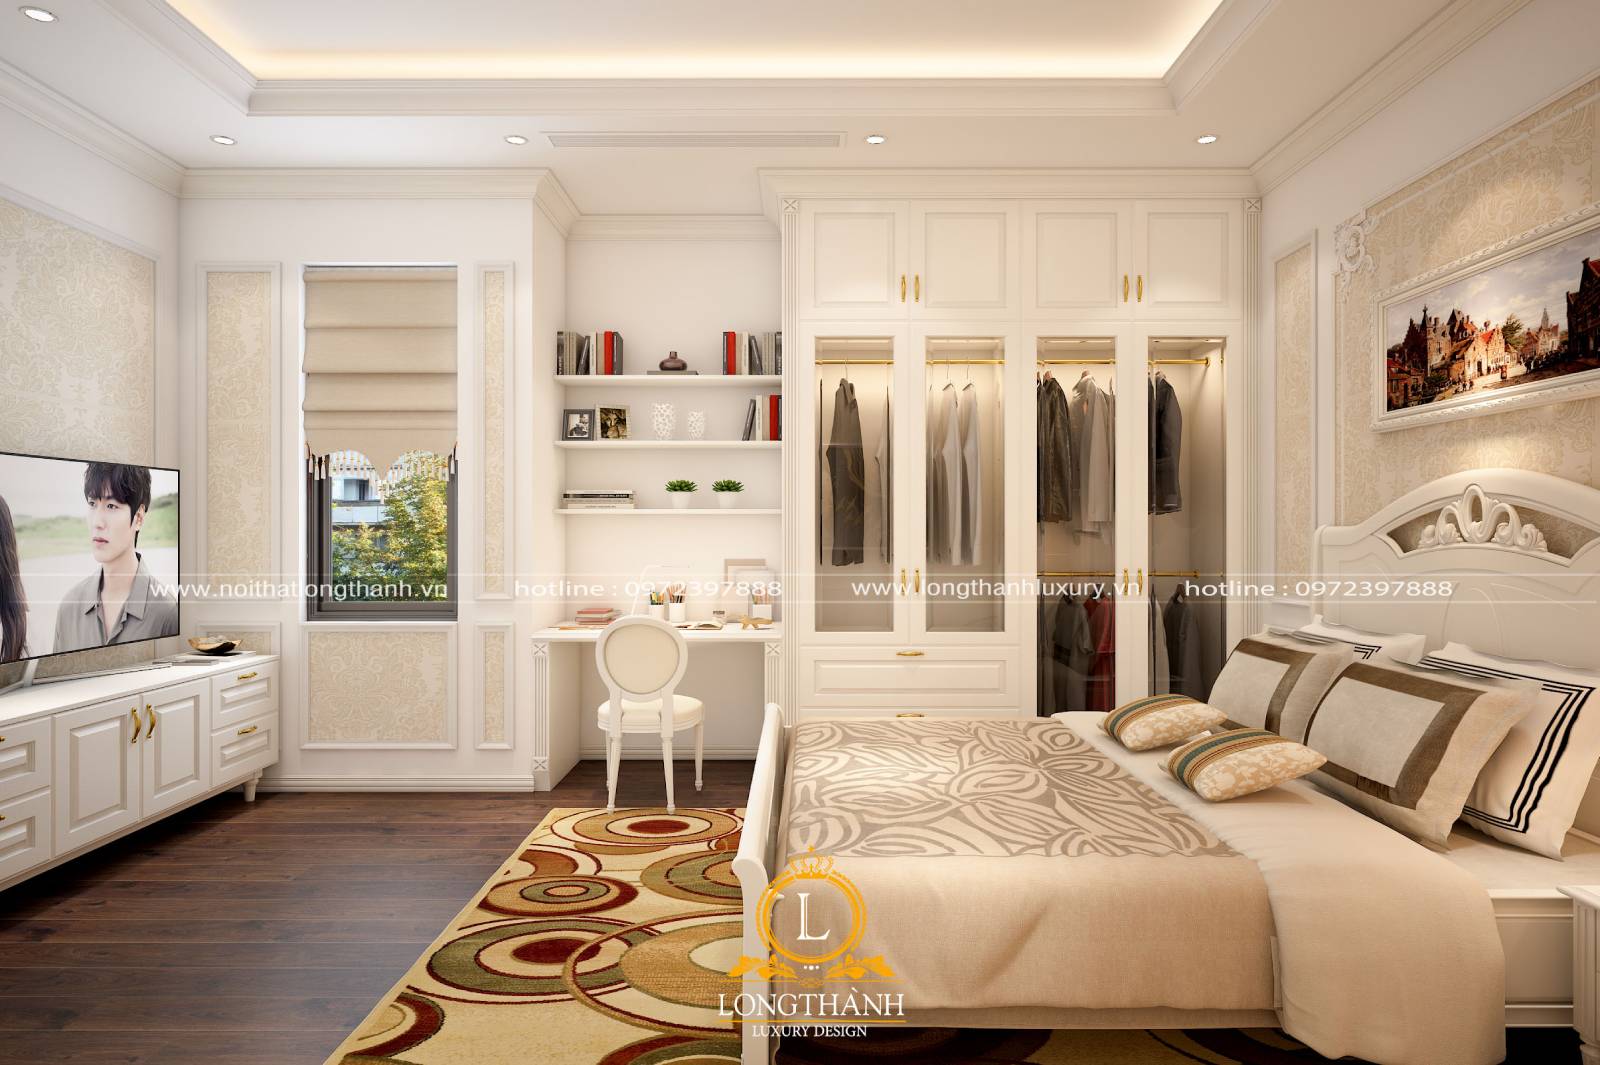 Bộ giường tủ tân cổ điển với màu sơn trắng cao cấp